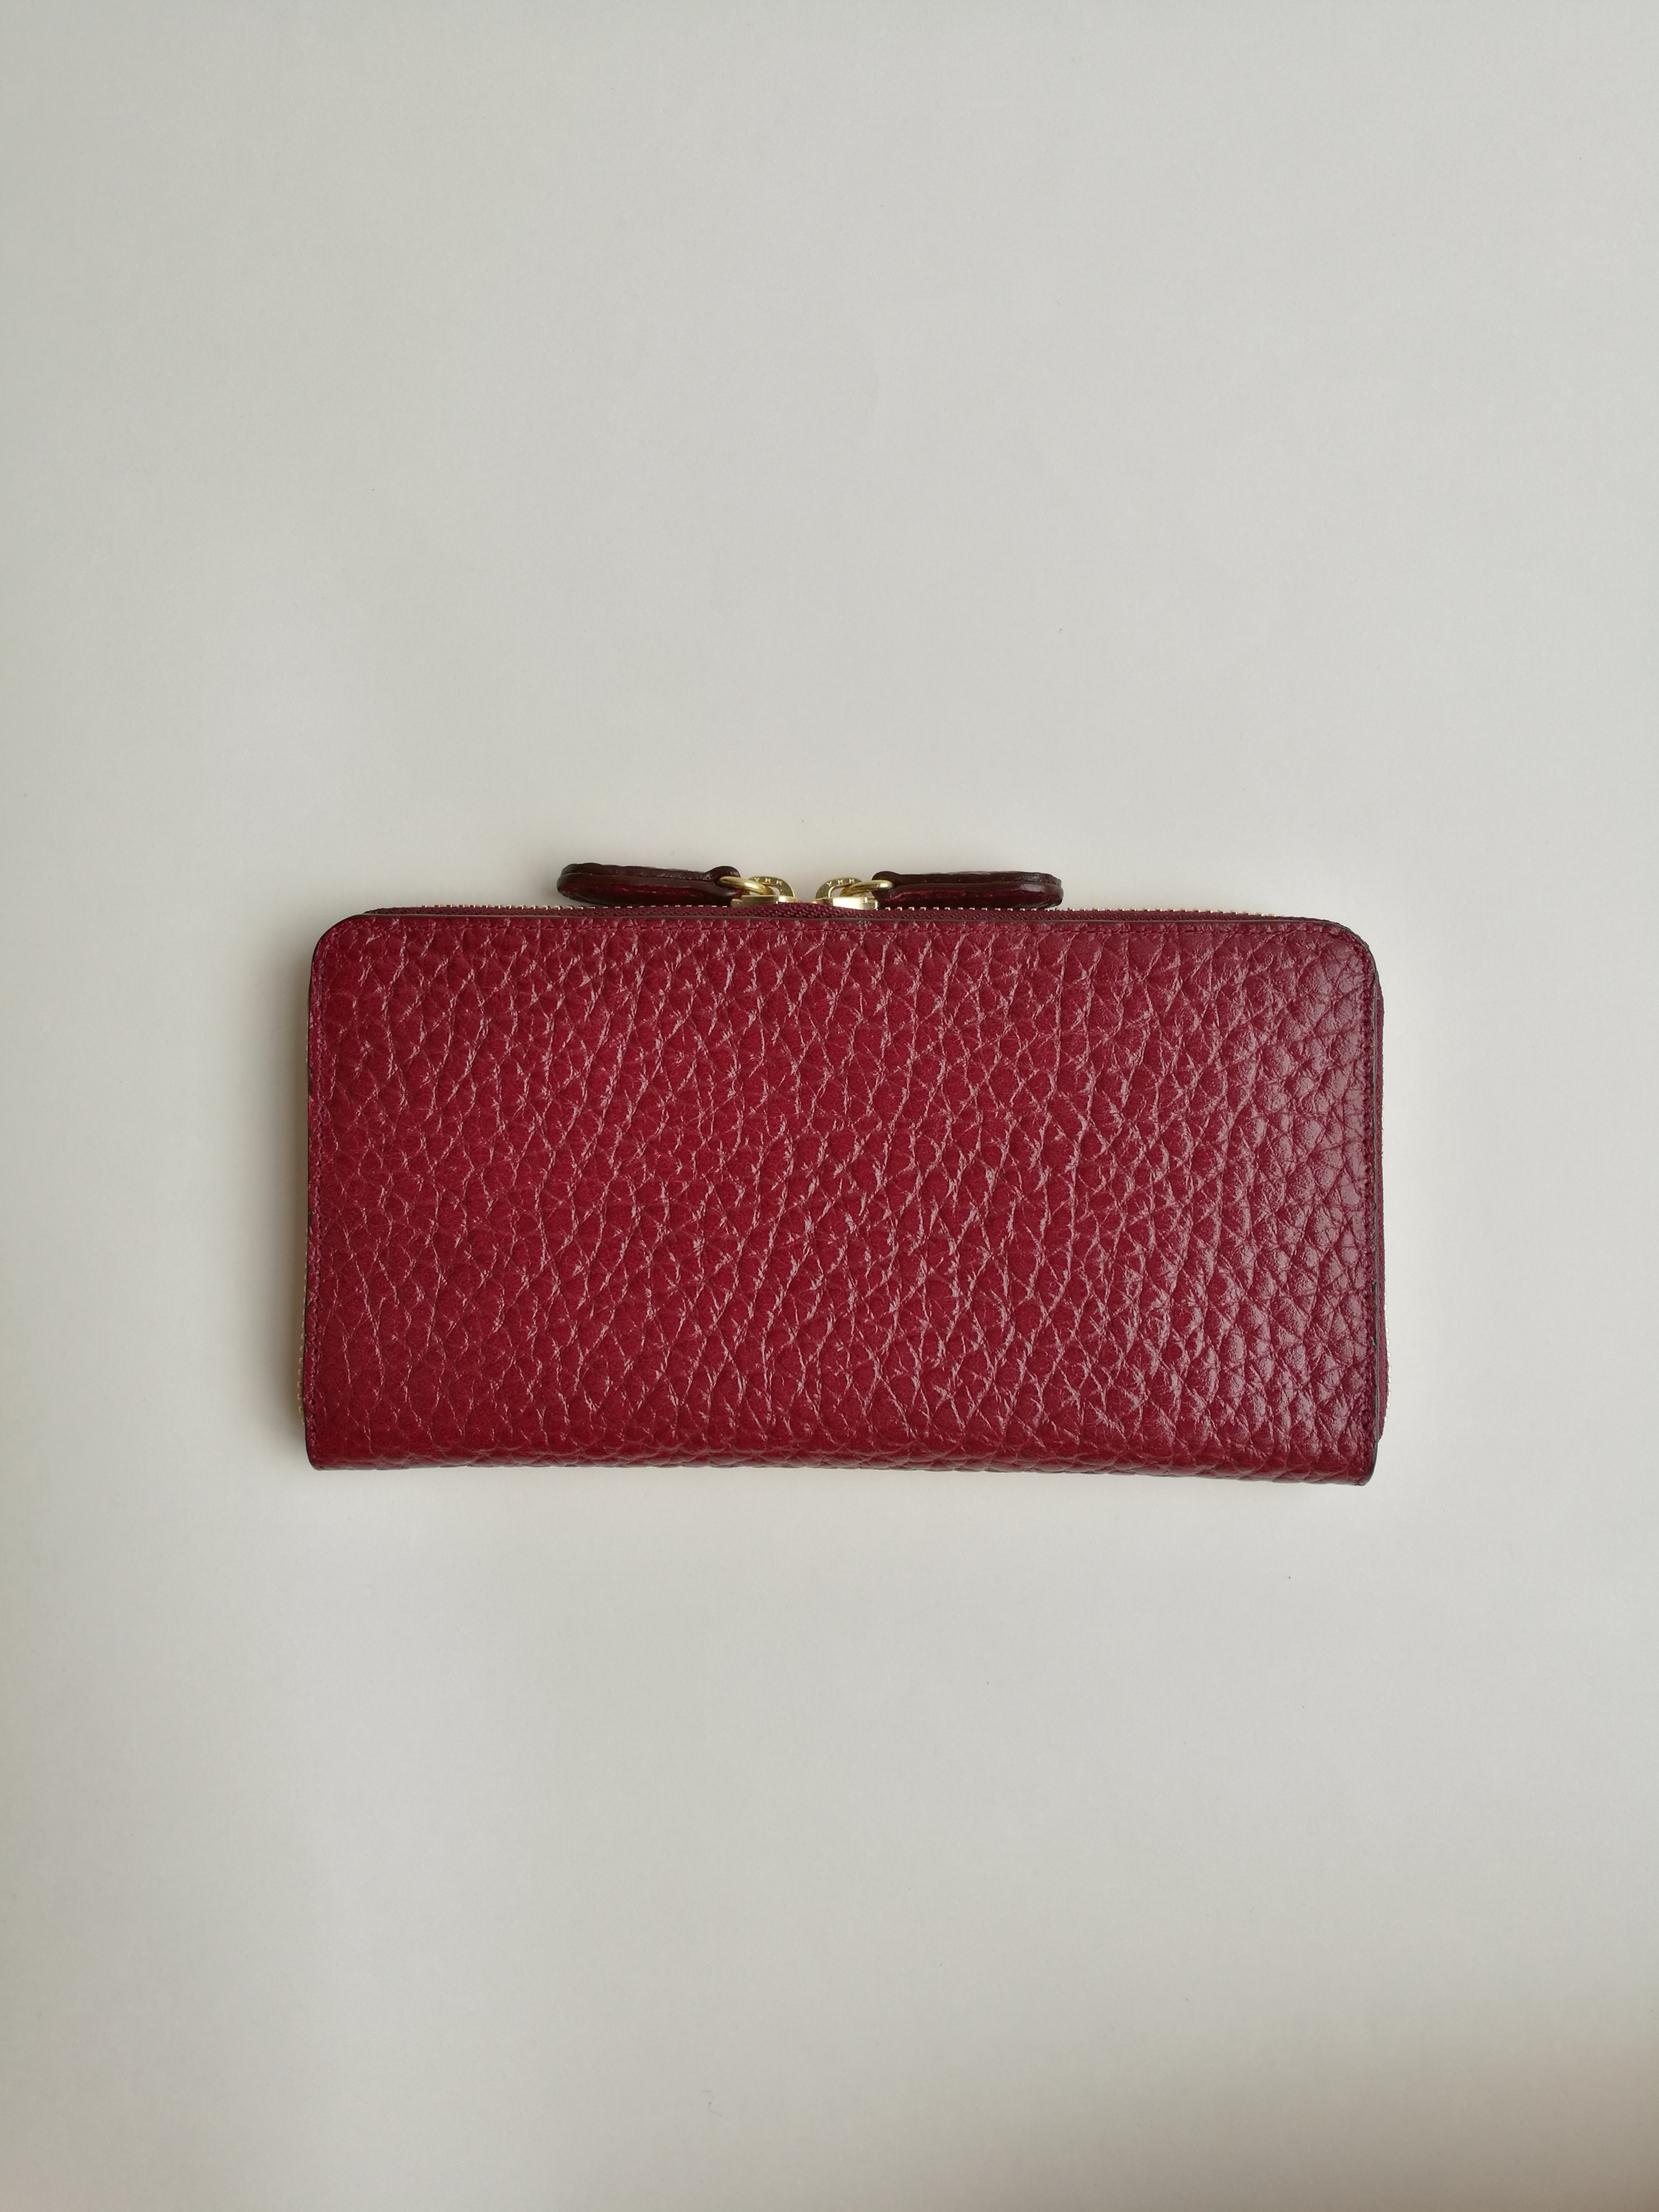 Round zip wallet(wine red)